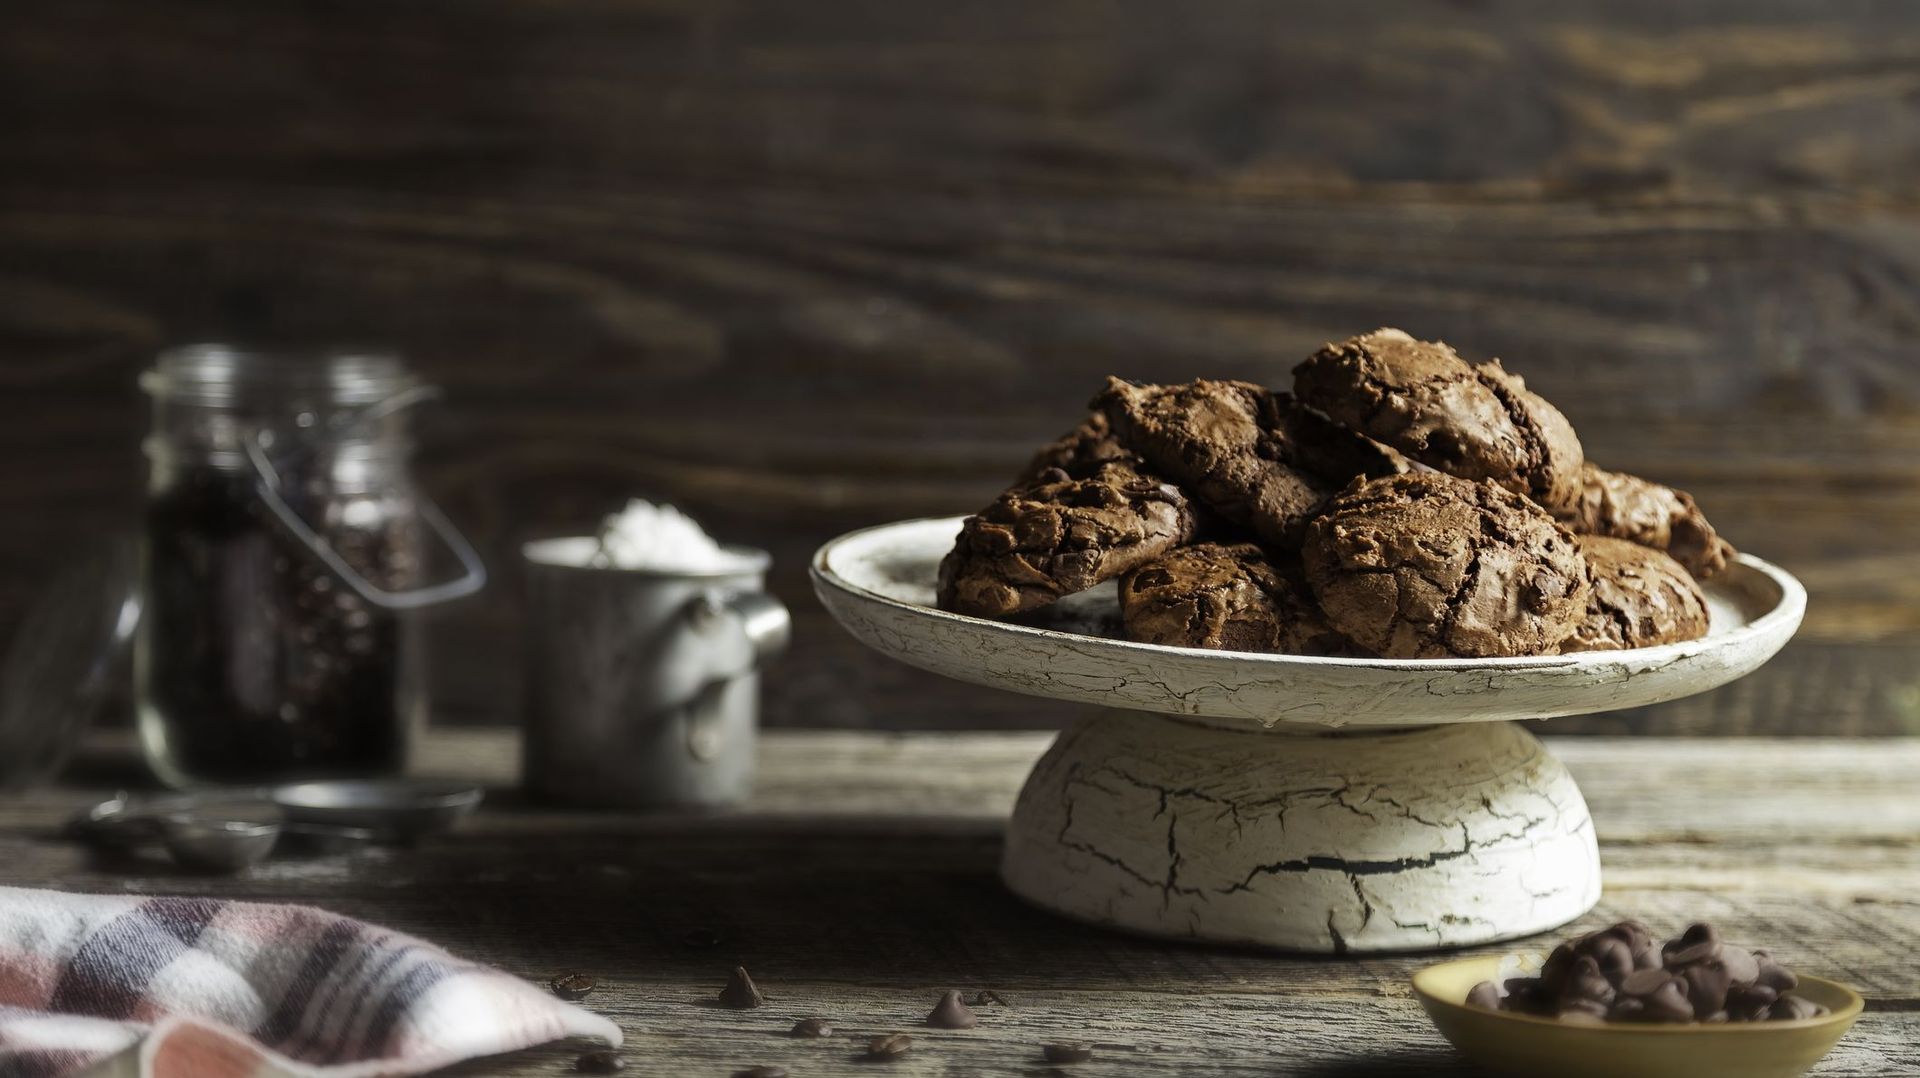 La ricetta di Candice: biscotti al cioccolato croccanti a lunga conservazione